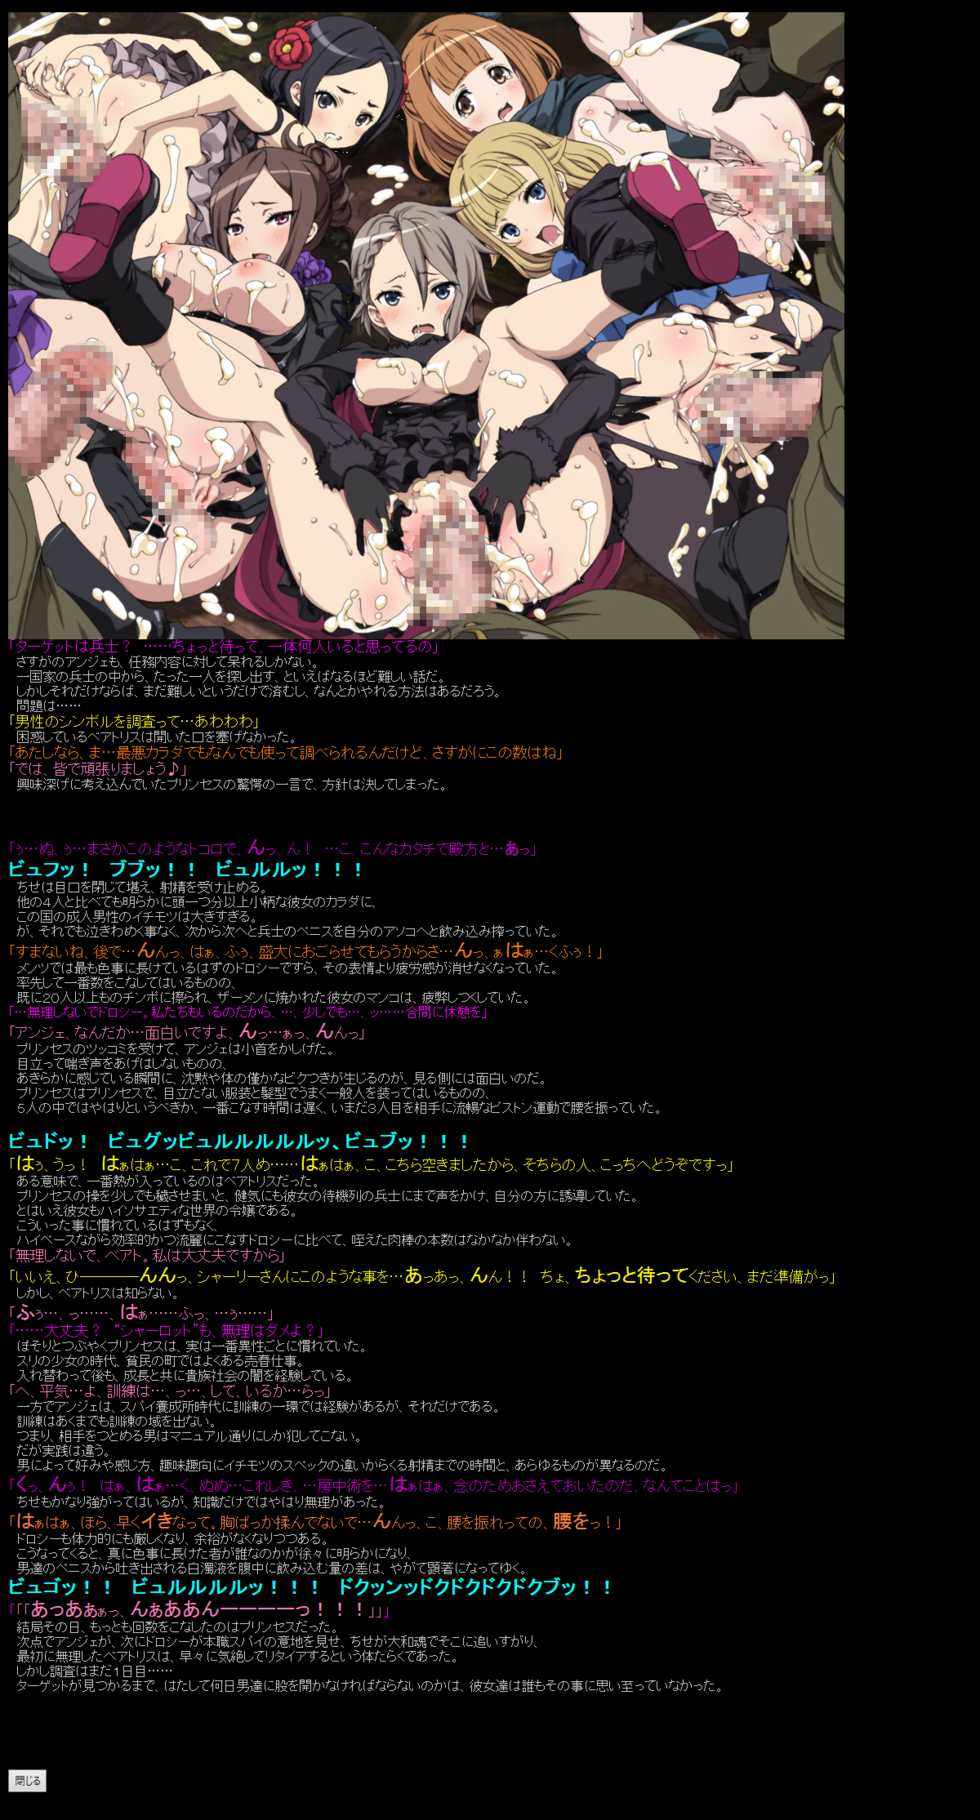 [LolitaChannel (Arigase Shinji)] Yuumei Chara Kannou Shousetsu CG Shuu No.386!! Princess Principal HaaHaa CG Shuu (Princess Principal) - Page 2